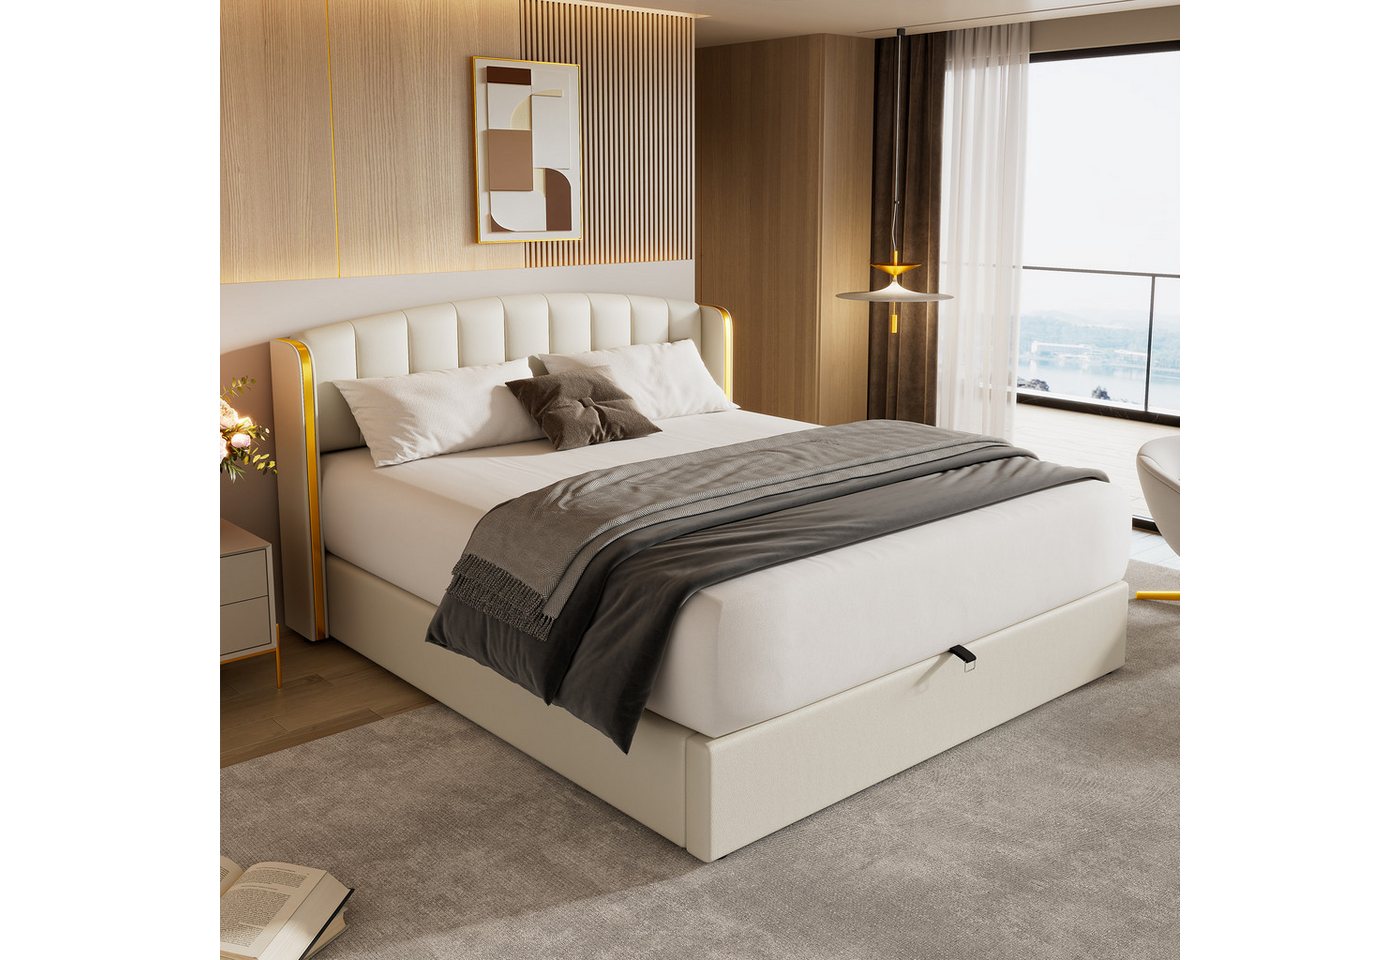 MODFU Polsterbett Hydraulisches Bett (180*200cm), mit goldgerandetes Ohrendesign, Bettkasten, Lattenrost und Kopfteil von MODFU